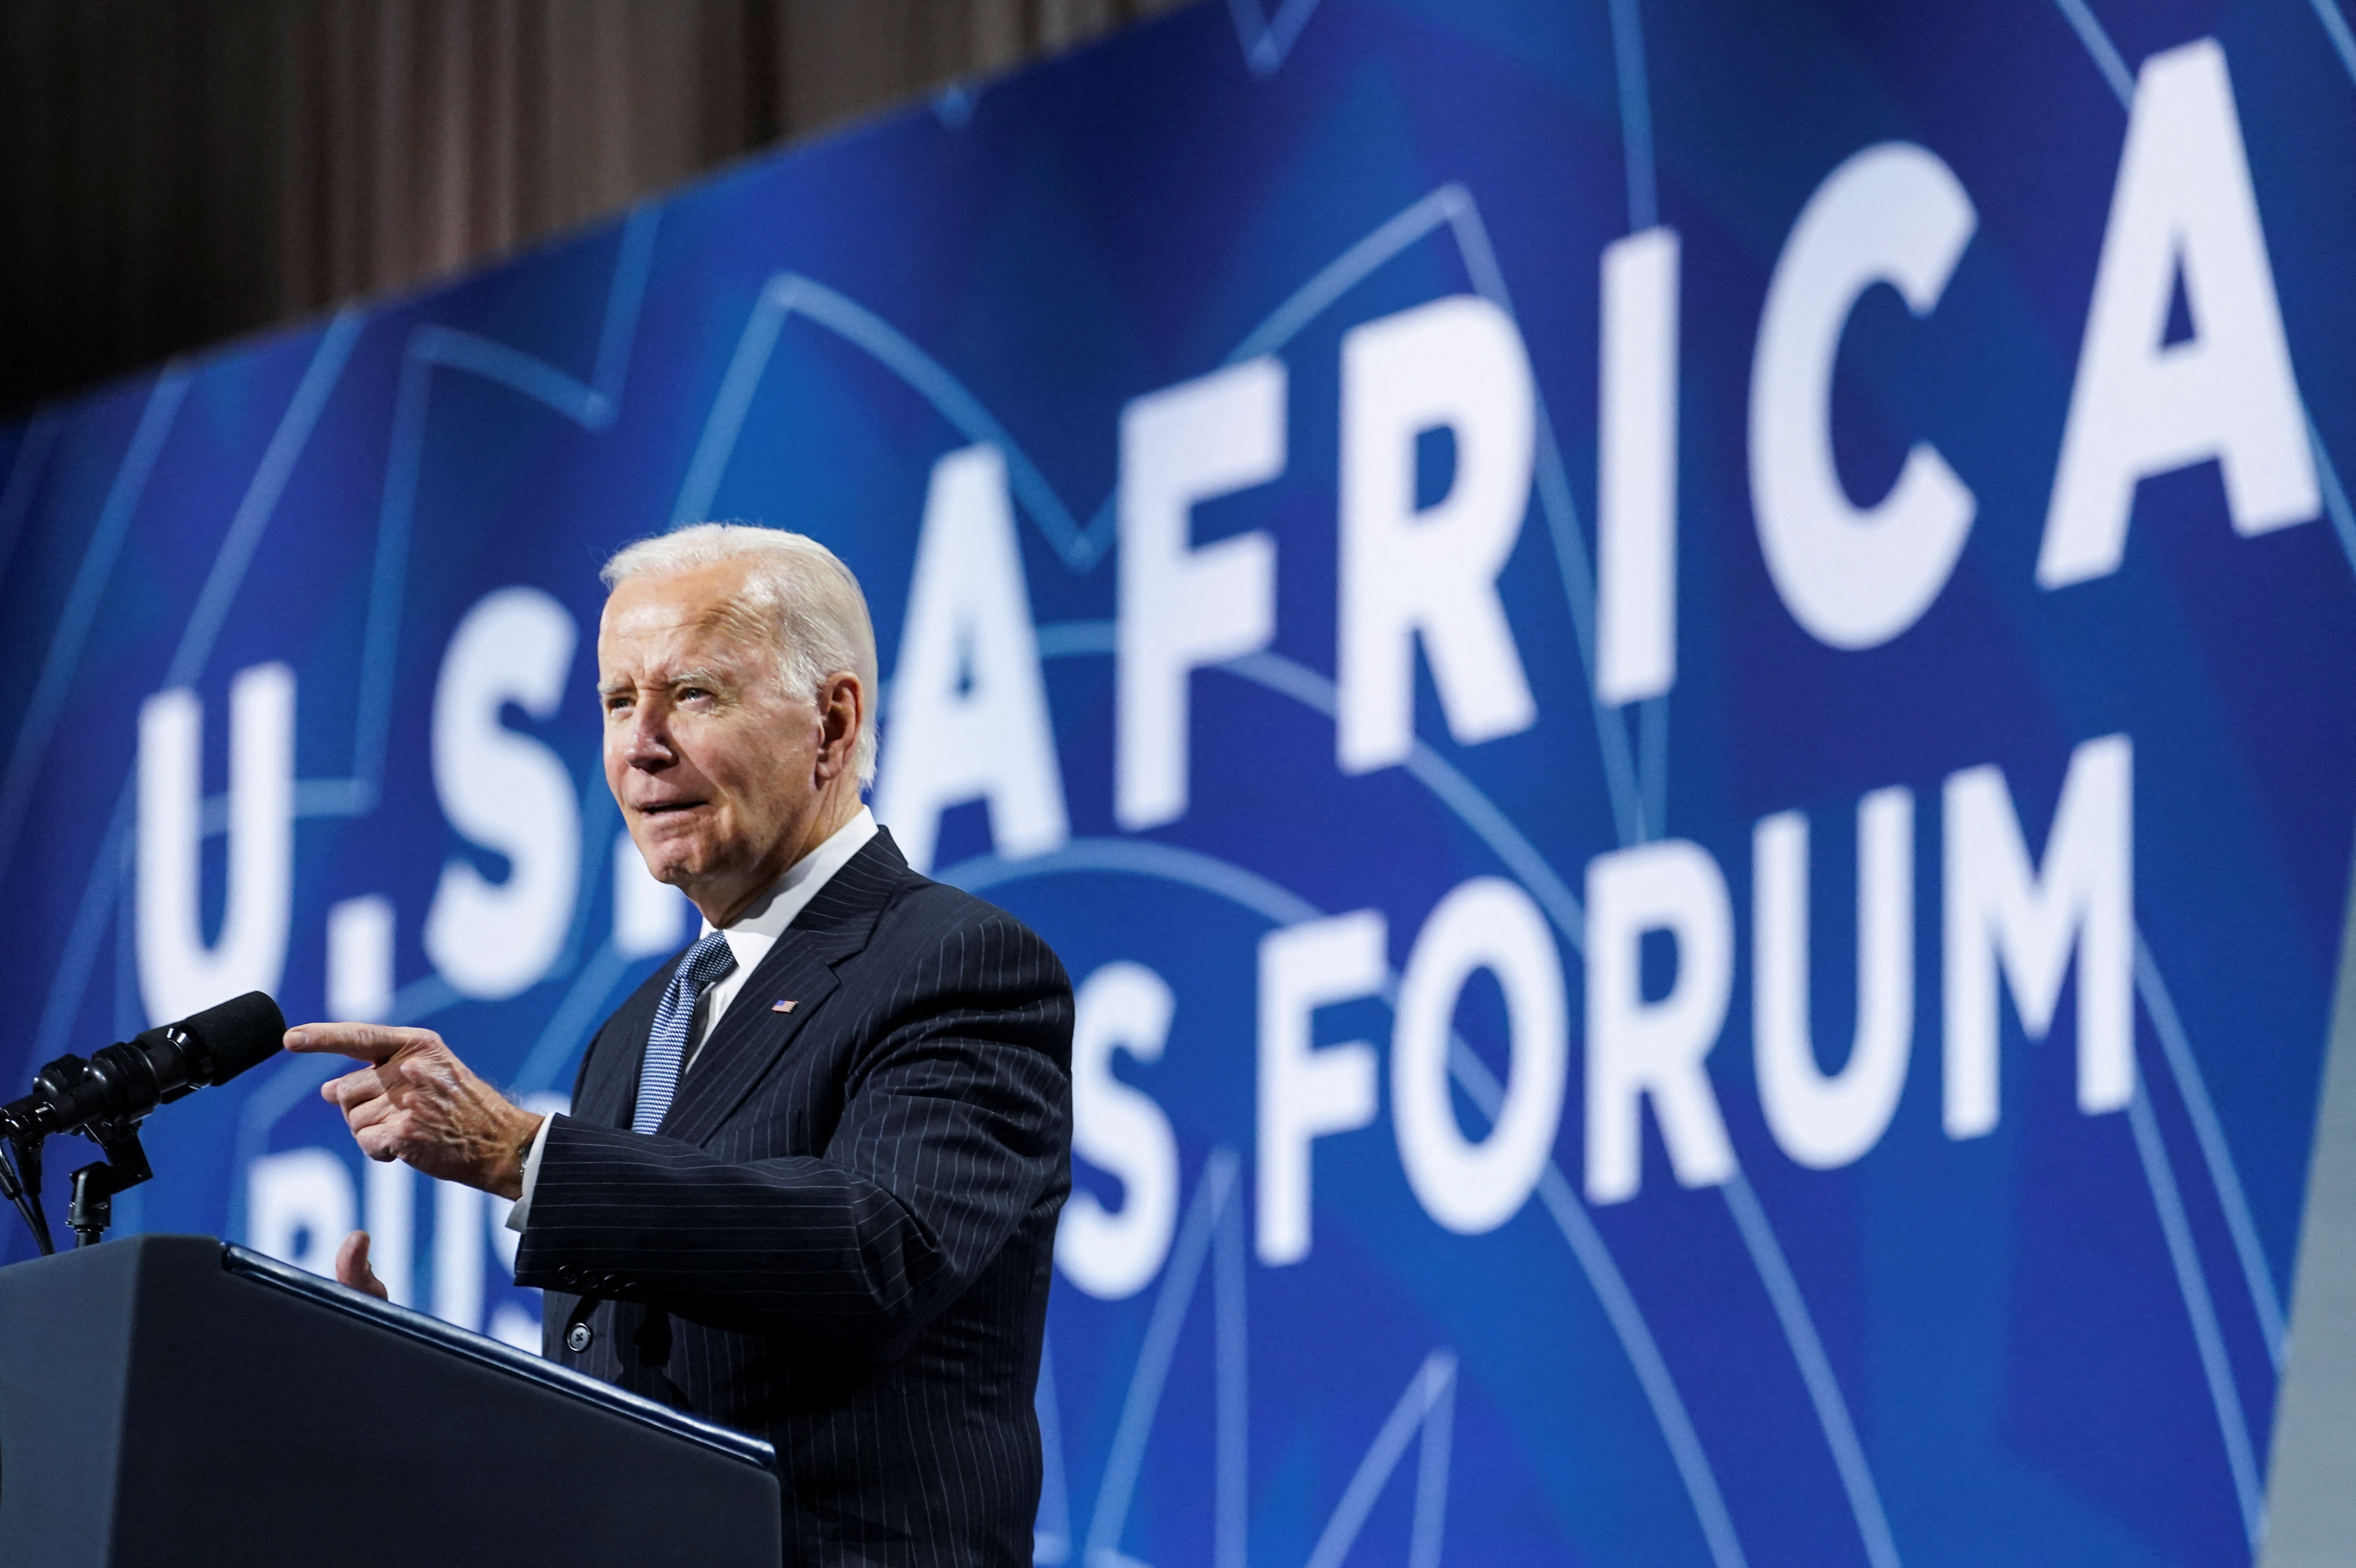 الرئيس الأمريكي بايدن يلقي كلمة في قمة قادة الولايات المتحدة وأفريقيا لعام 2022 في واشنطن